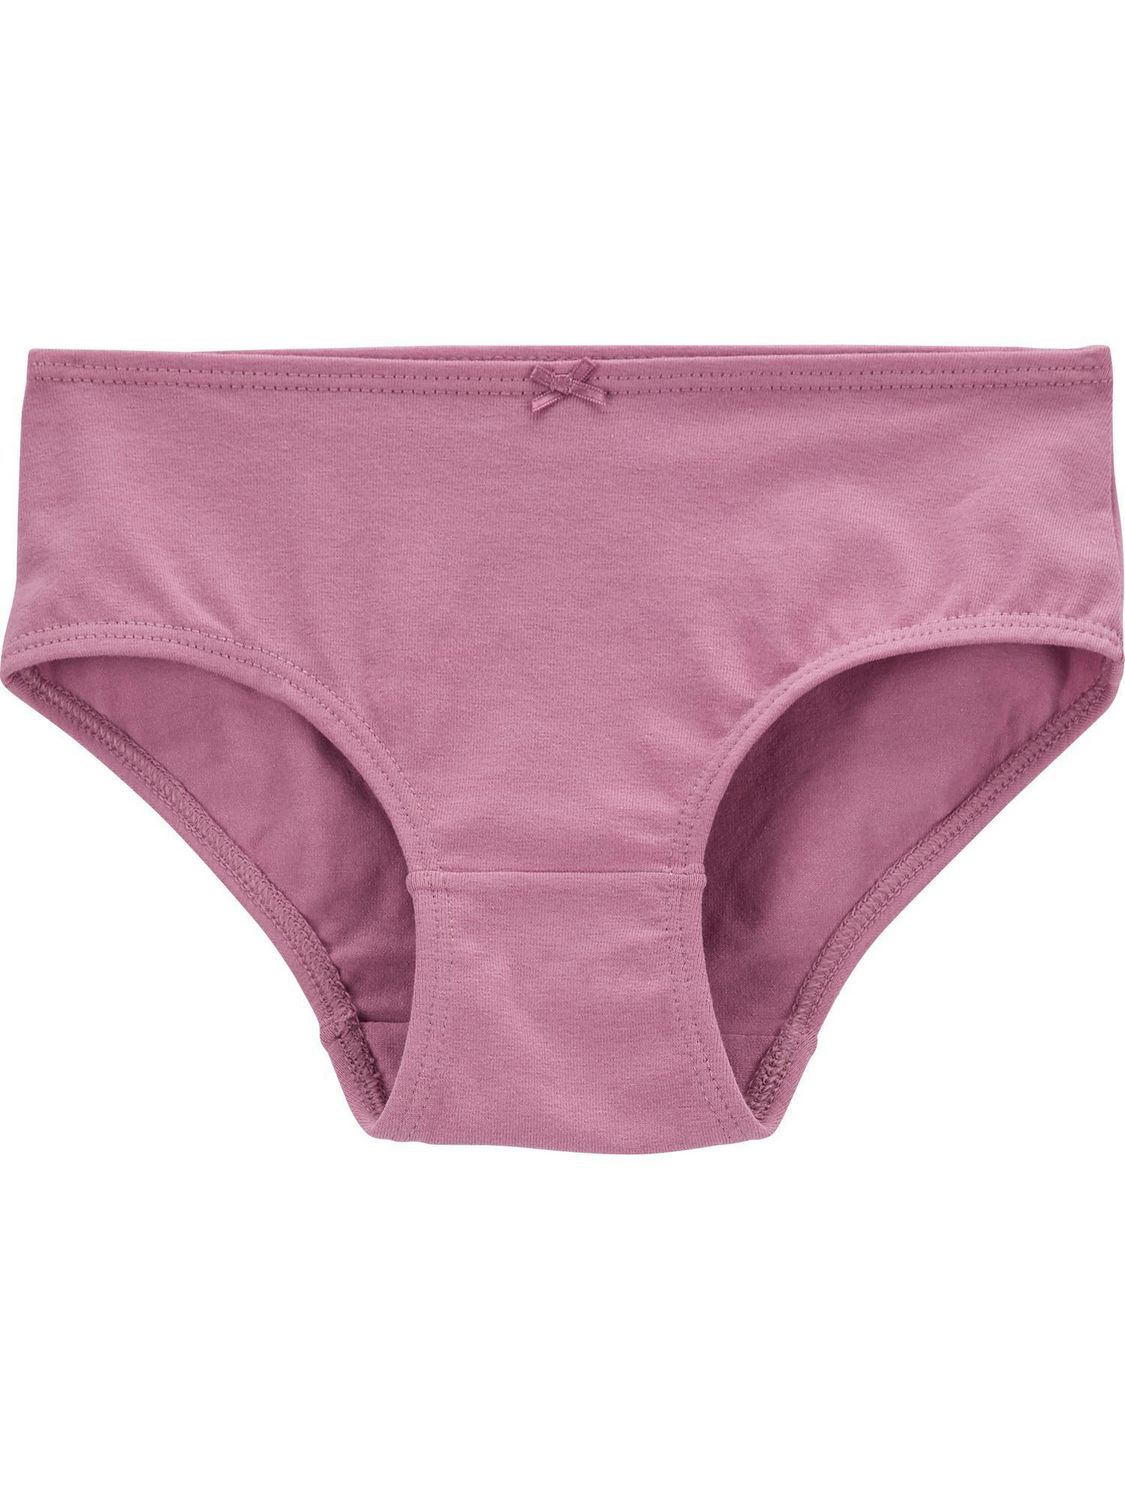 Carter's Child of Mine Girls' Underwear - Unicorn, 4-12 